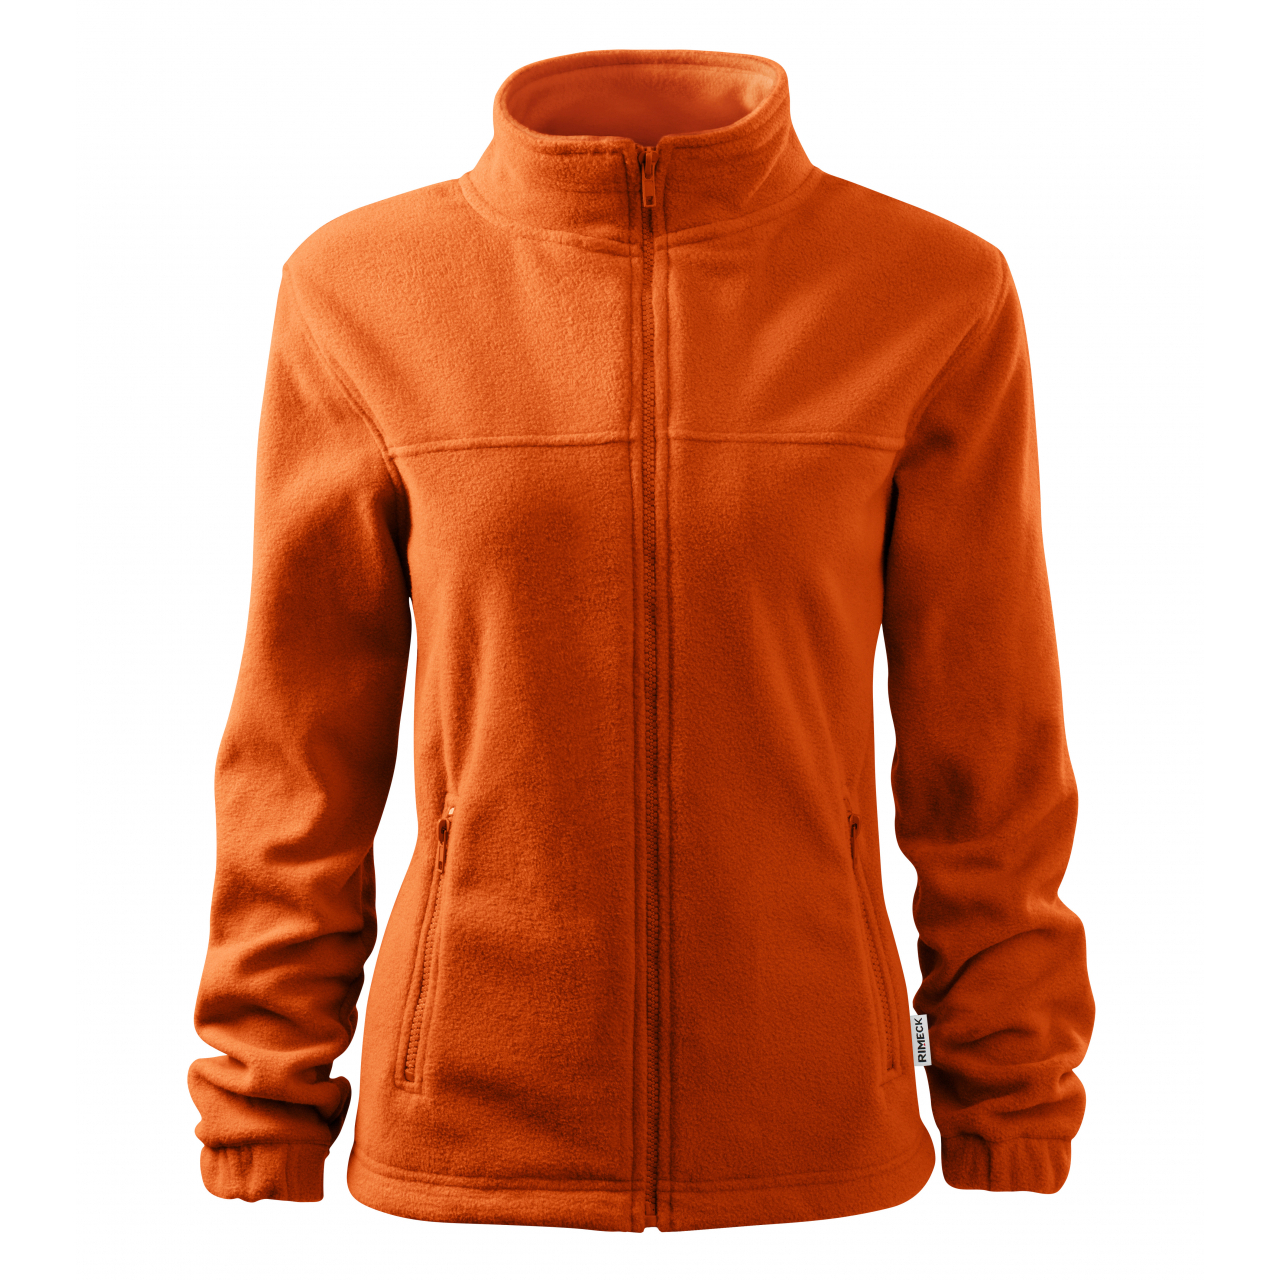 Mikina dámská fleecová Rimeck Jacket 504 - oranžová, XL